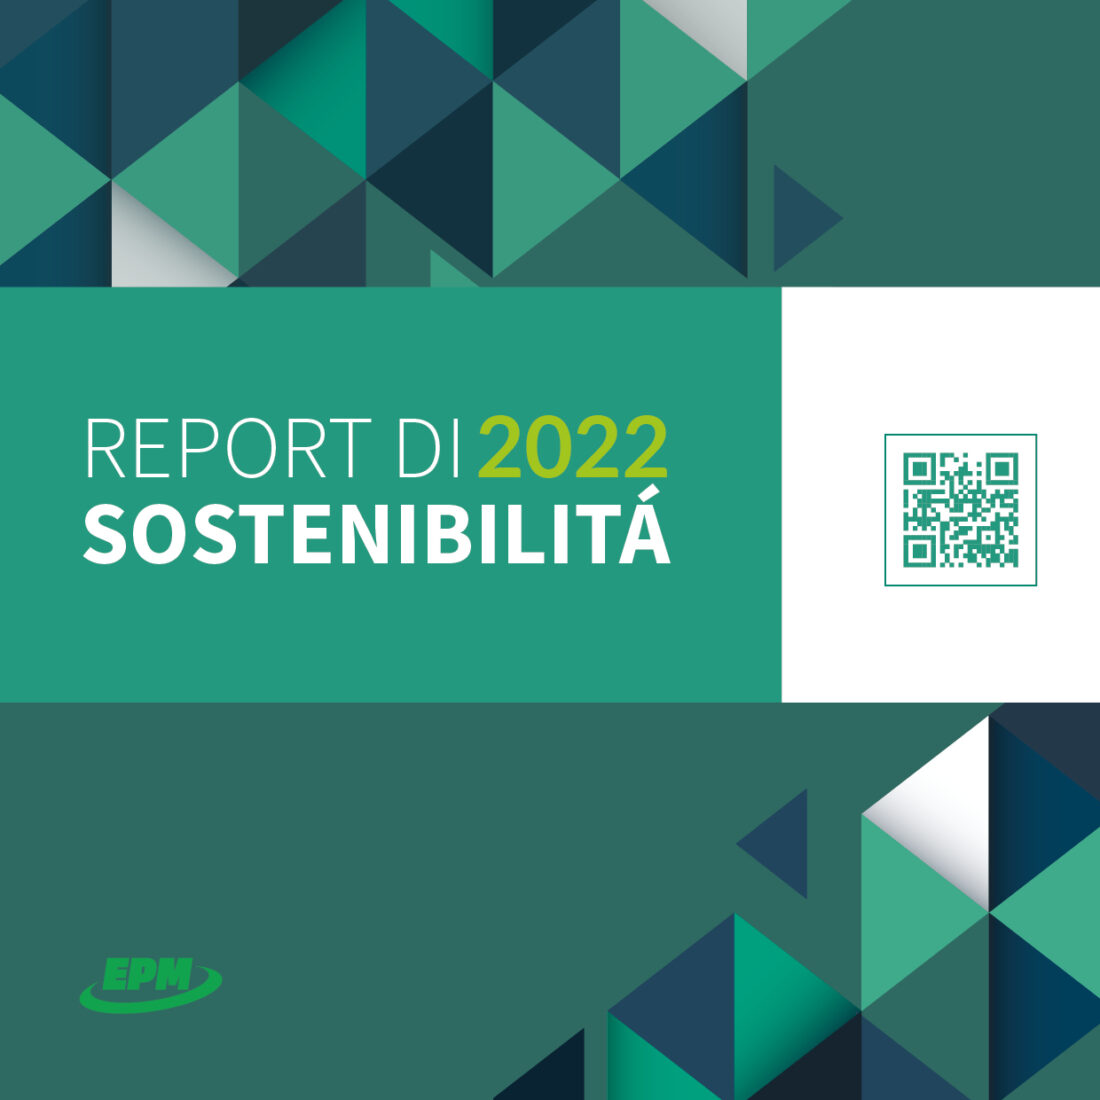 EPM report di sostenibilità 2022